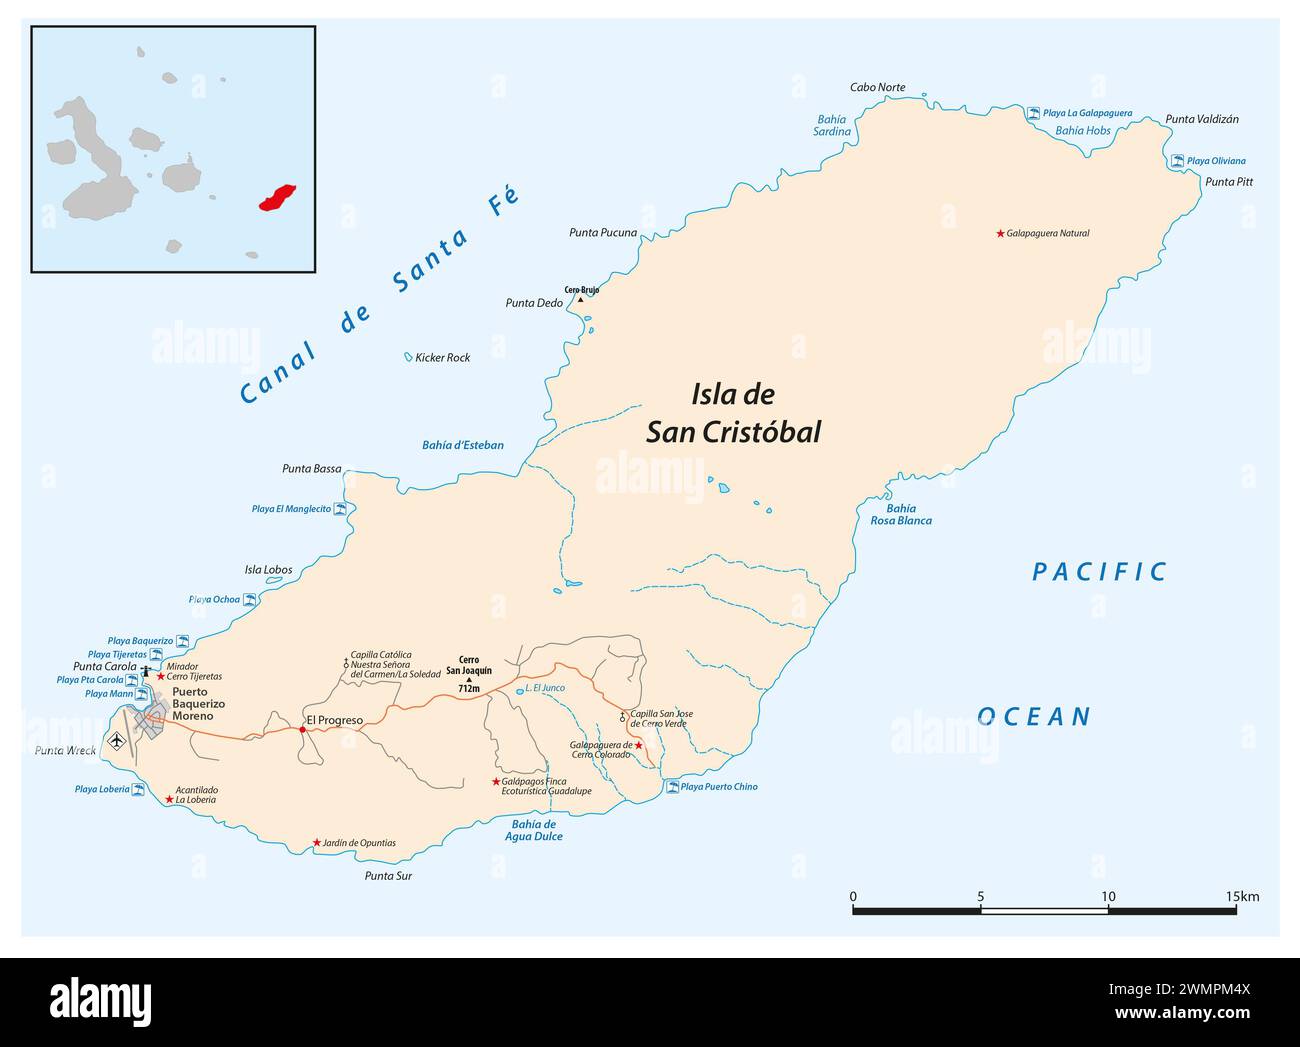 Vector map of the Ecuadorian island of San Cristobal, Galapagos Islands Stock Photo